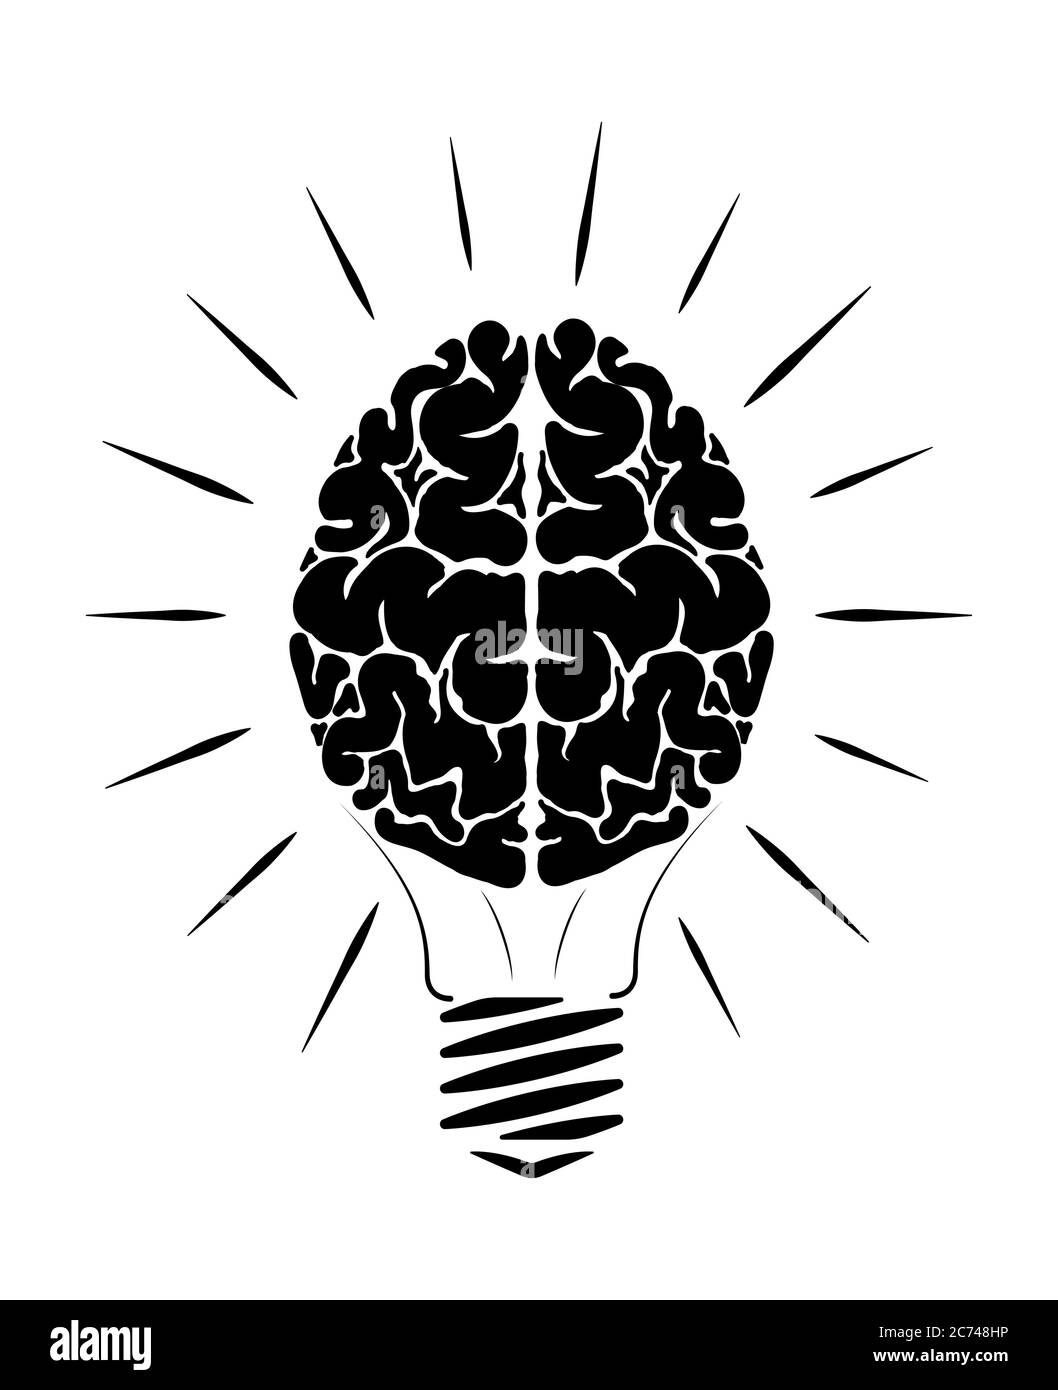 Glühlampe in Form eines Menschen Gehirn. Das schwarz-weiße menschliche Gehirn. Leuchten in verschiedene Richtungen. Logo für den Bildungsbereich. Stock Vektor